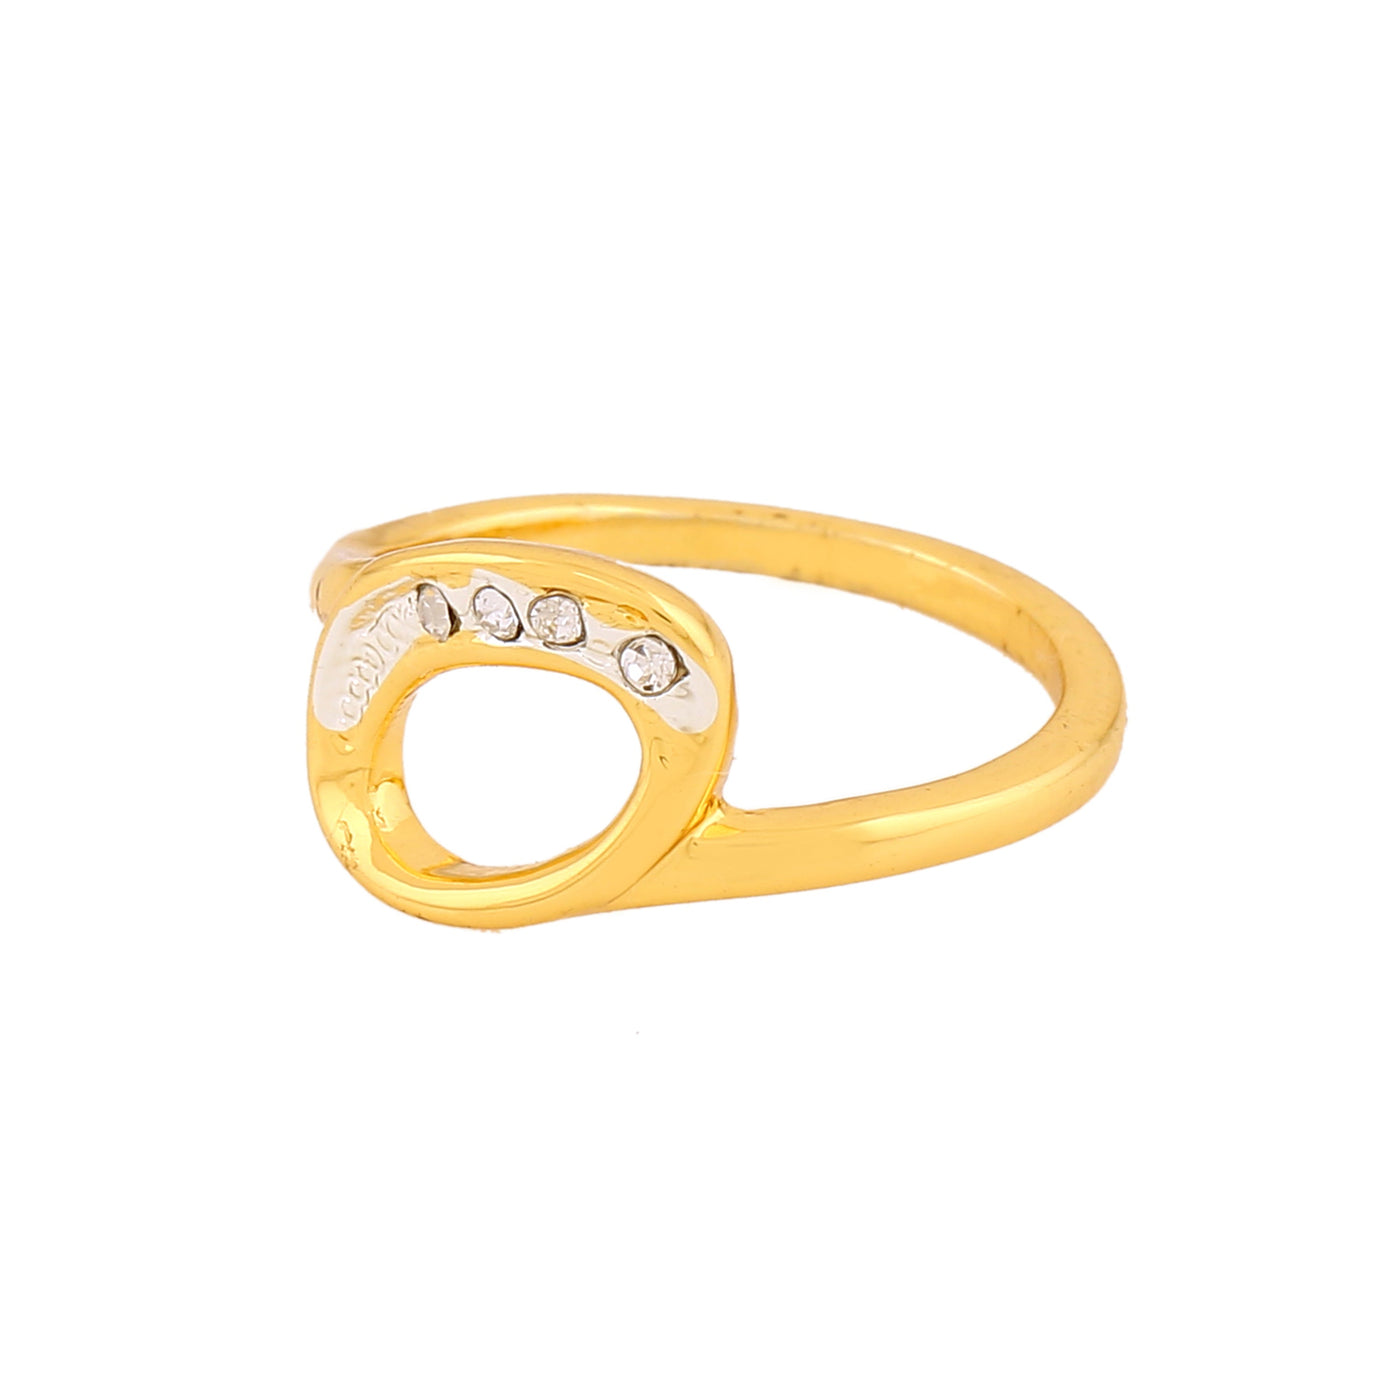 Estele Gold Plated Leaf Designer Finger Ring with Crystals for Women